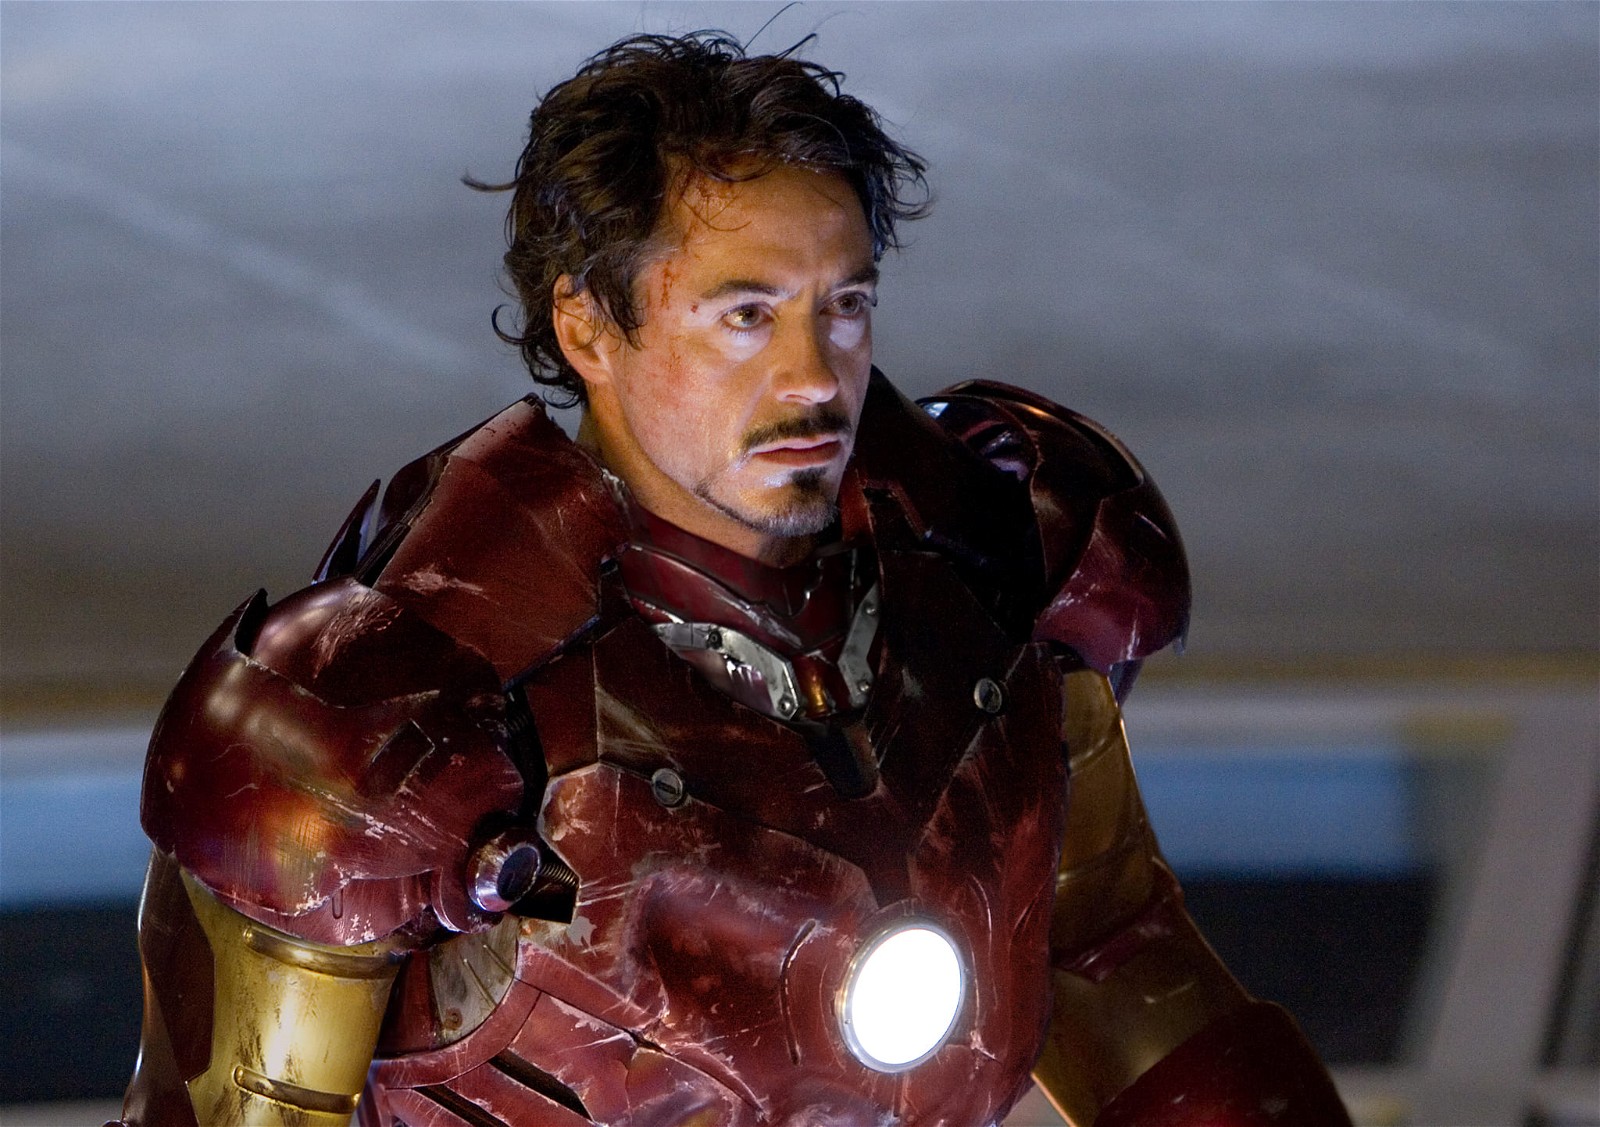 Robert Downey Jr in Iron Man suit